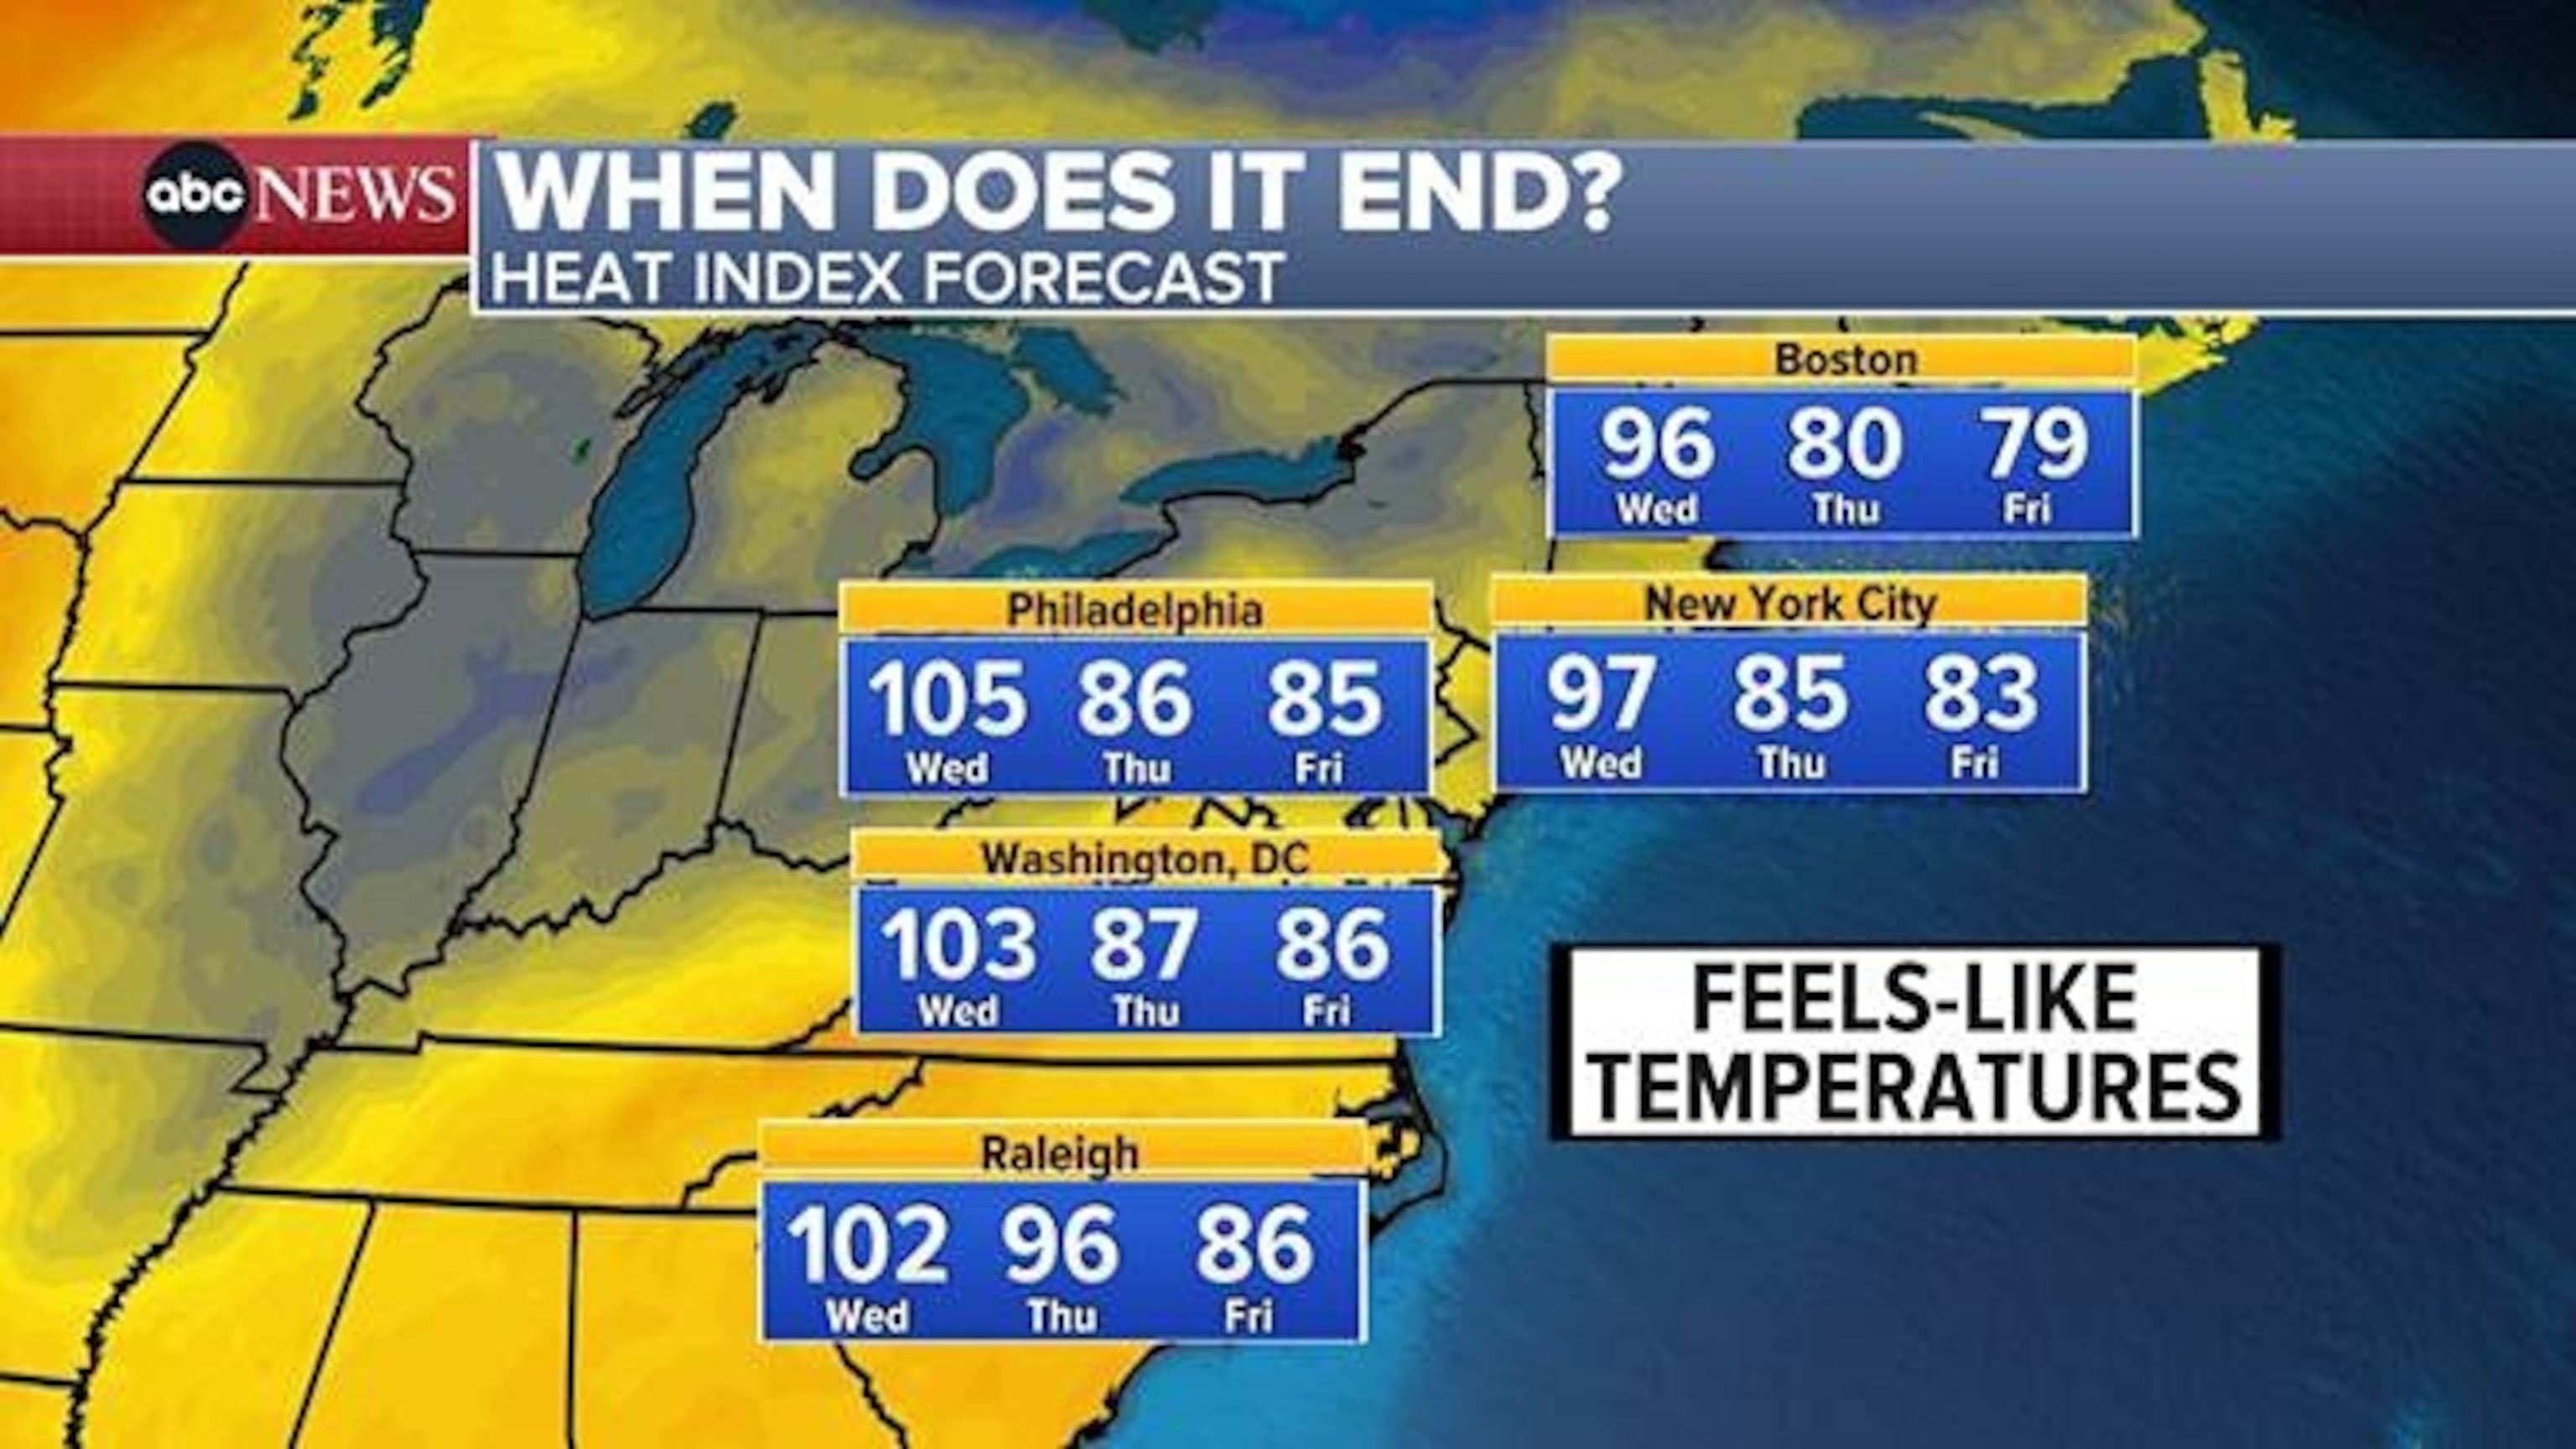 PHOTO: Heat Index Forecast Map